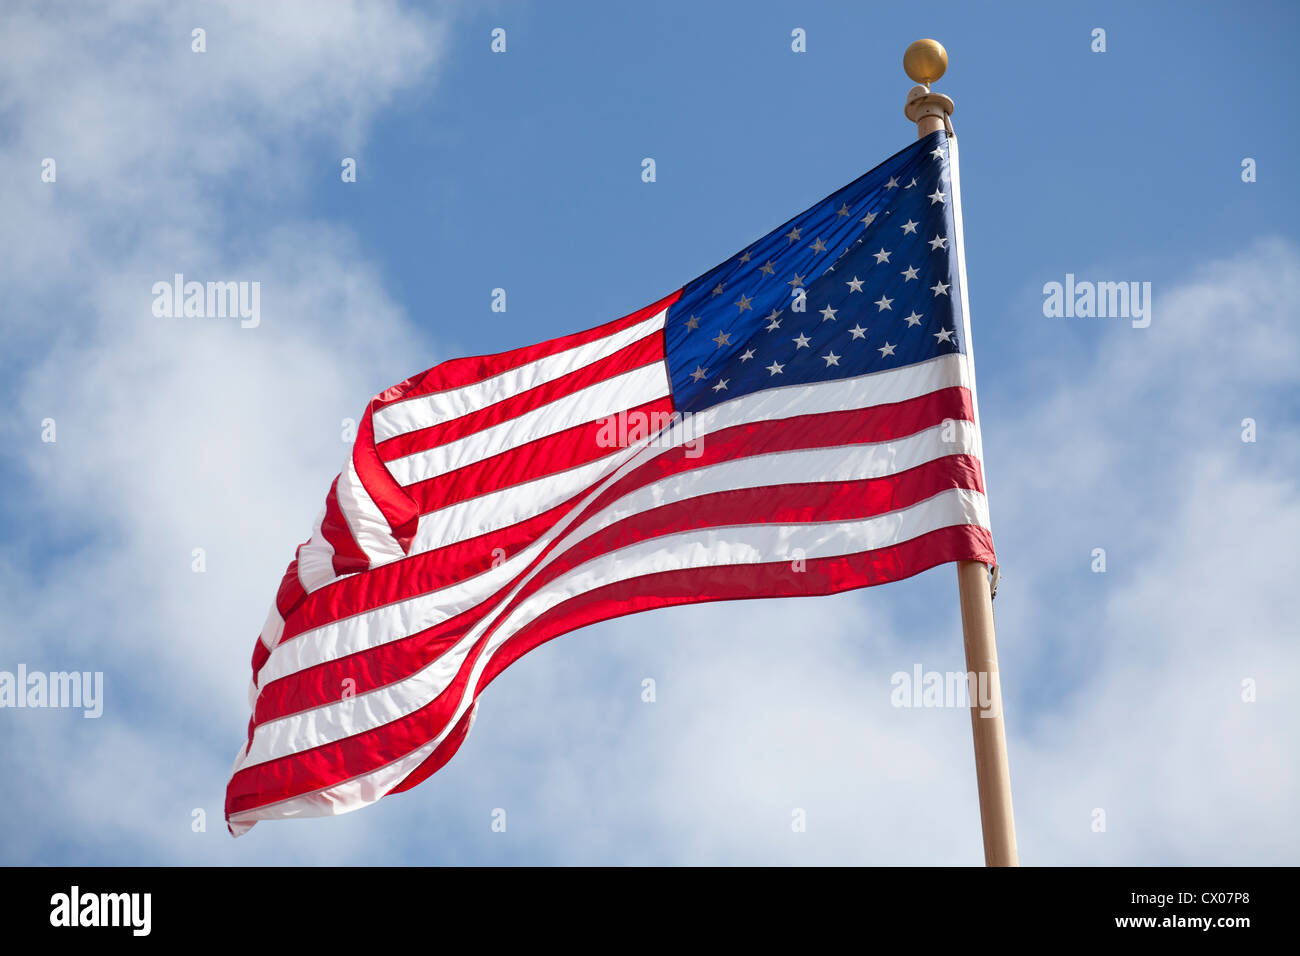 United States national flag Stock Photo